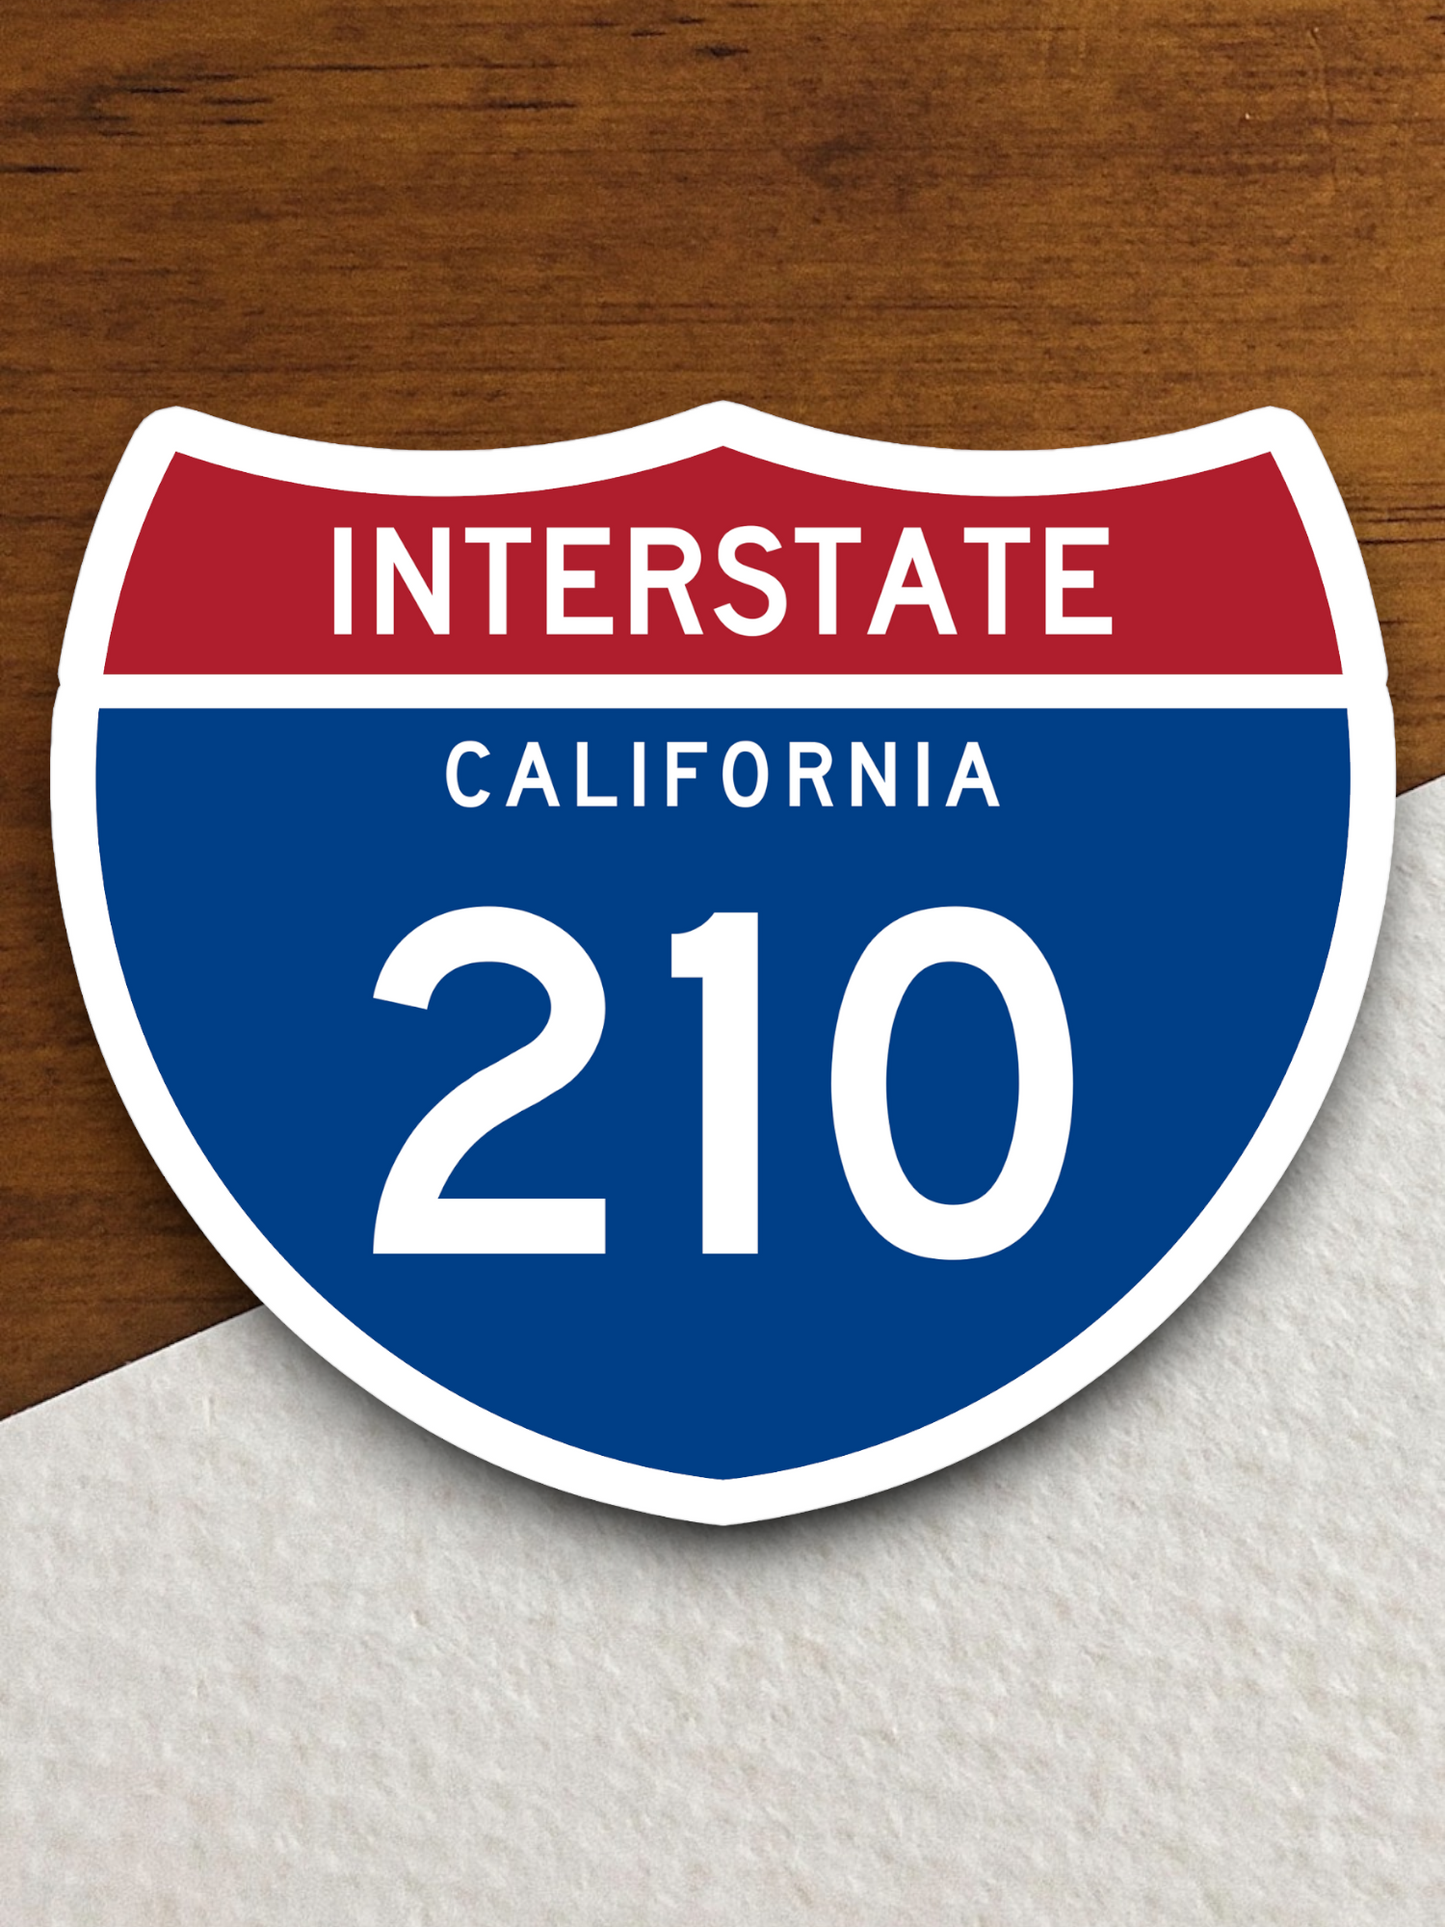 Interstate I-210 California Sticker